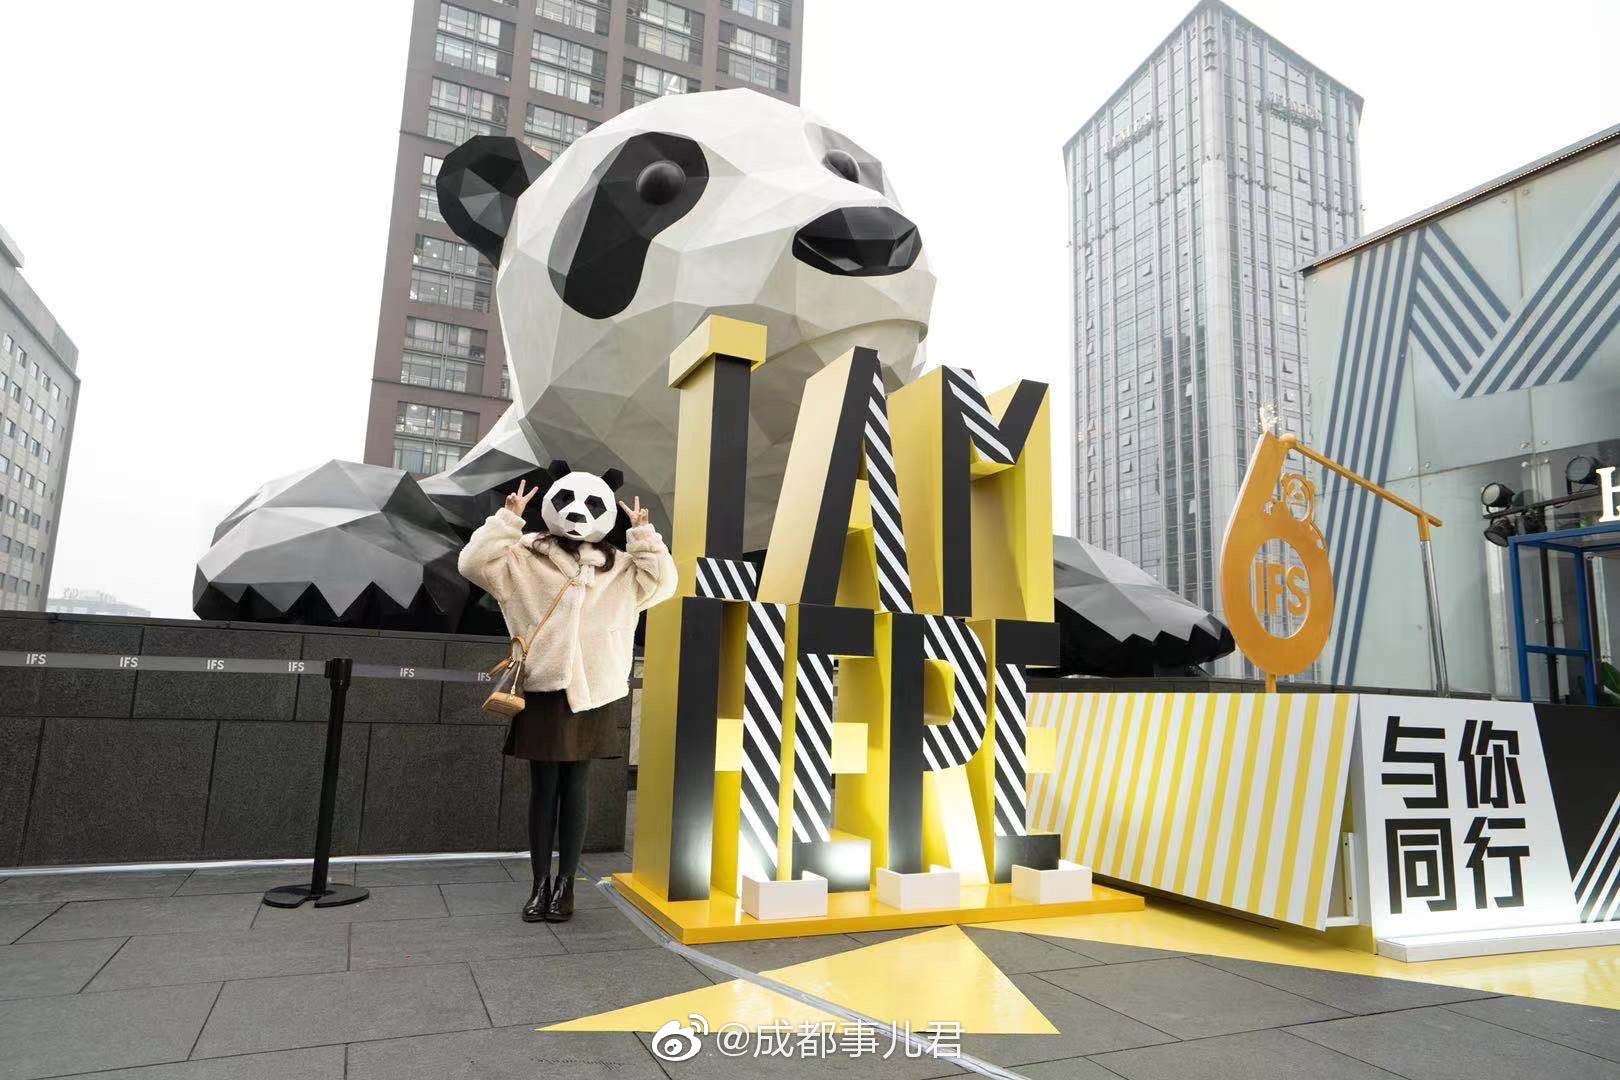 @成都IFS 上的爬墙大熊猫一直是成都的标志性打卡点